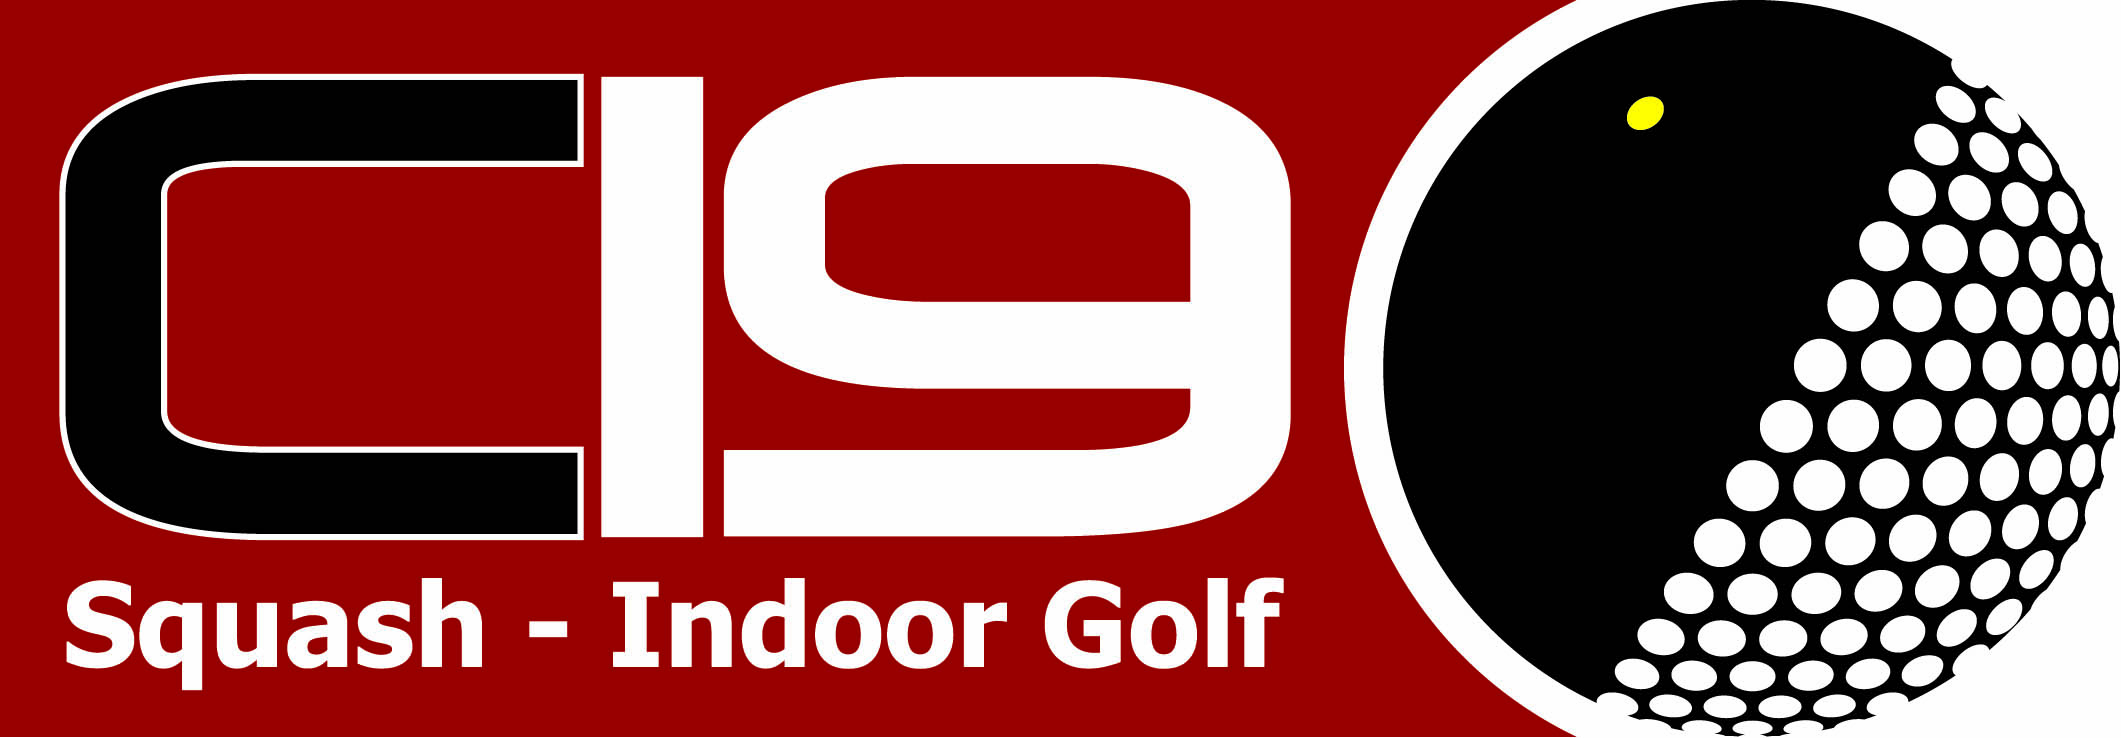 C19 Squash - Indoor Golf